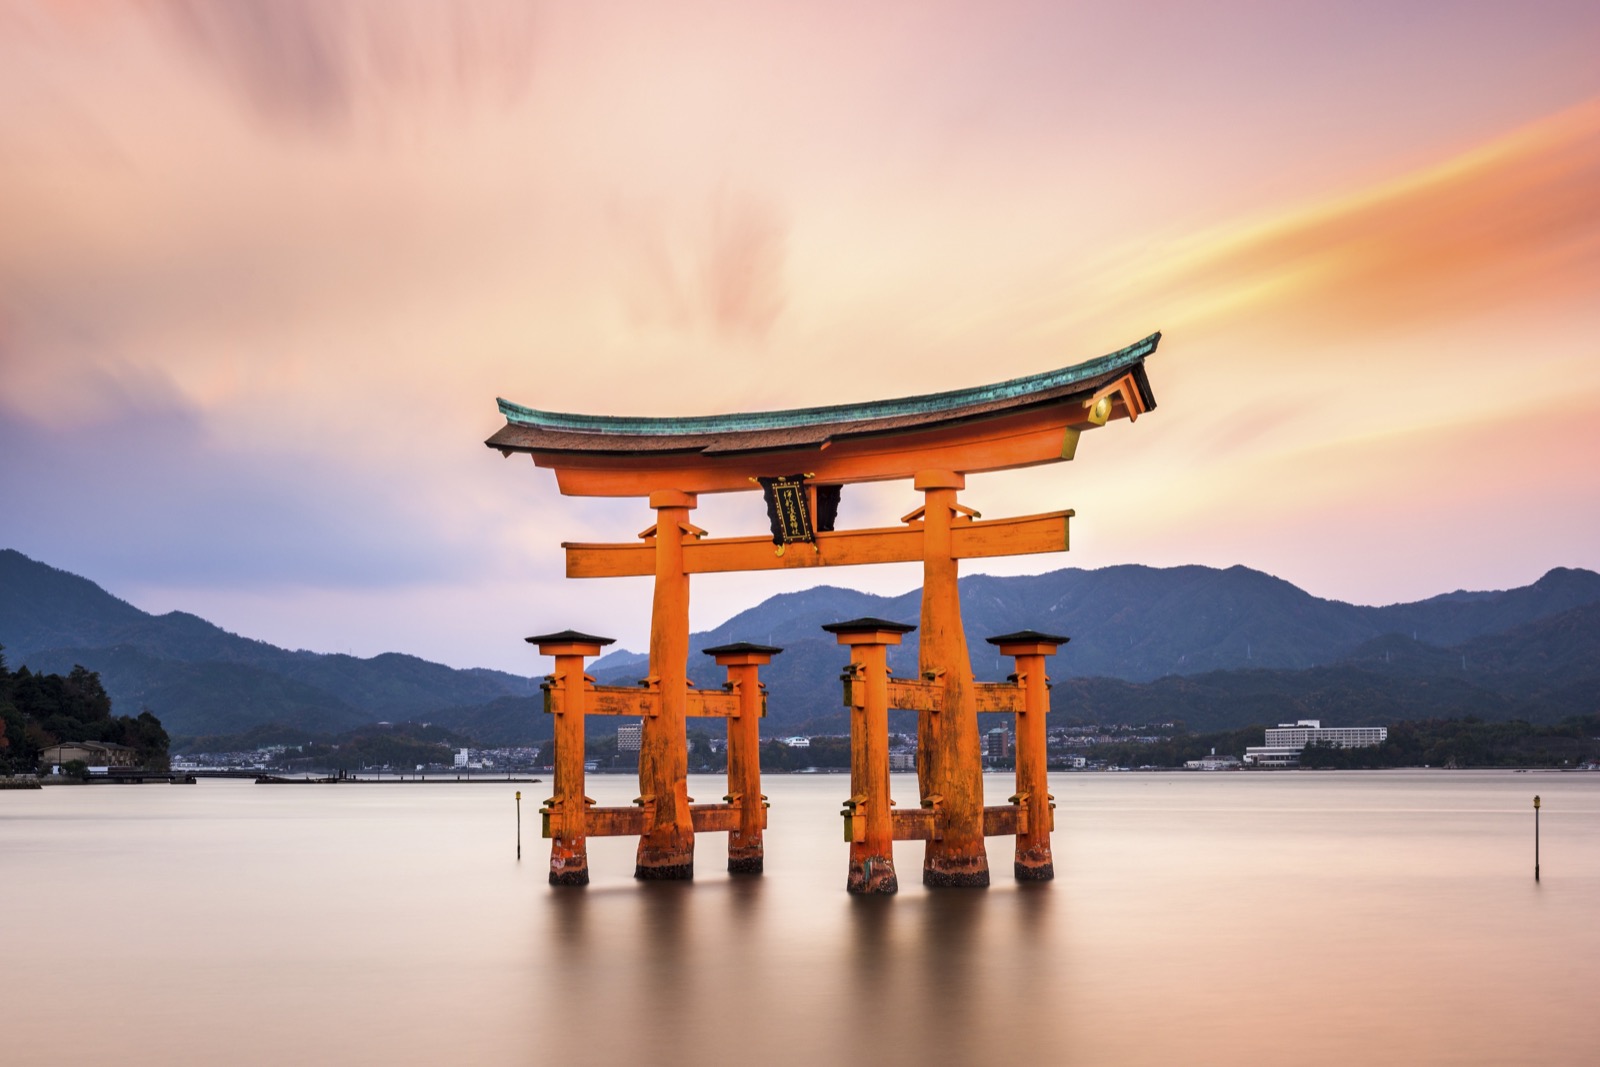 I’ll Be Frickin’ Impressed If You Can Score 20/20 on This Geography Quiz Itsukushima Shrine, Hiroshima, Japan Shintoism